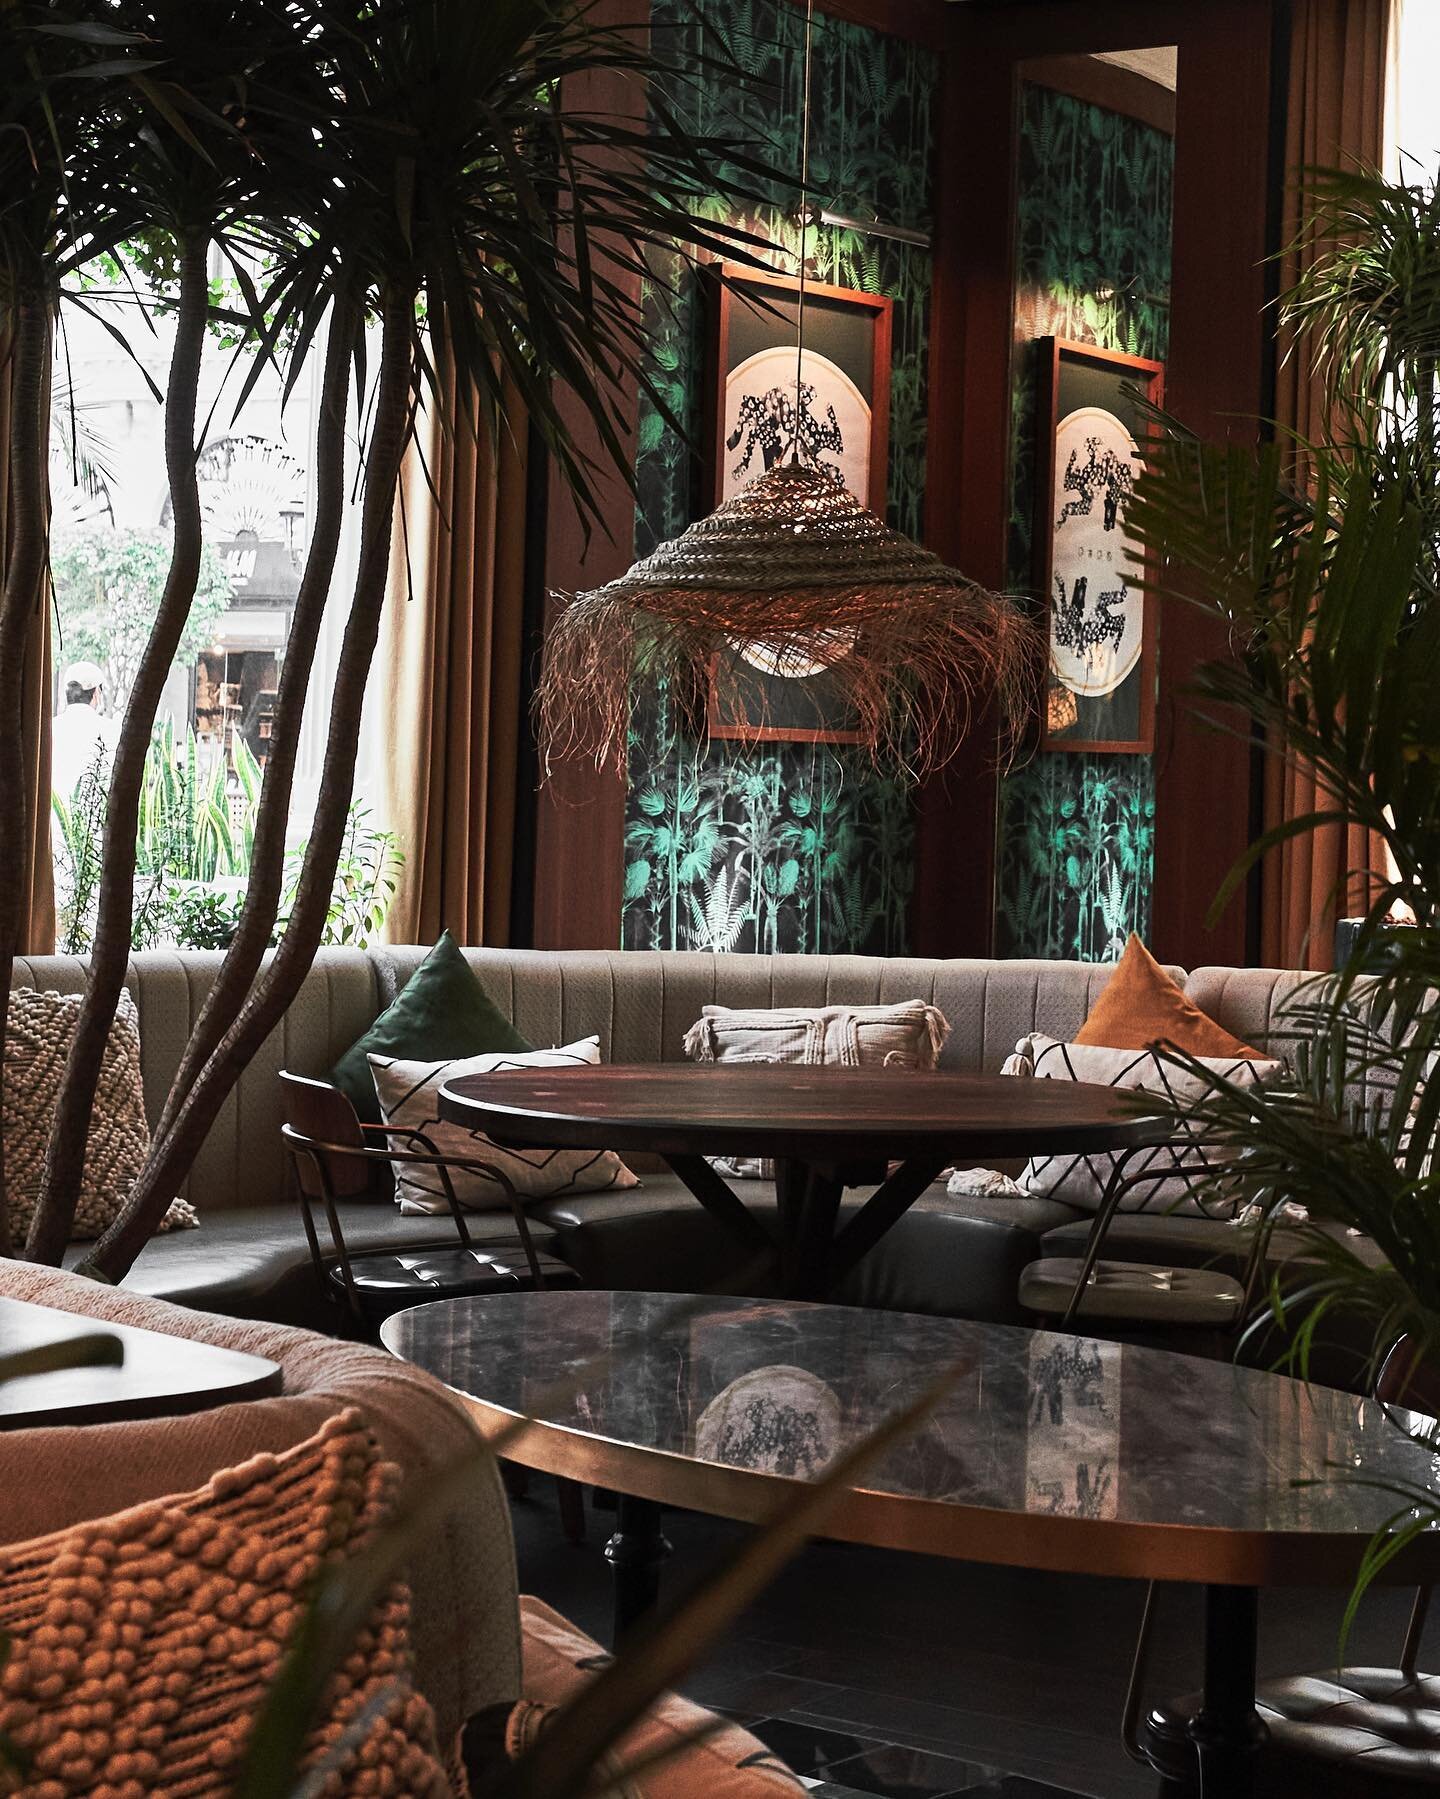 Lush mana 🌱 
#kuwaitphoto #interiordesign #restaurant #restaurantdesign